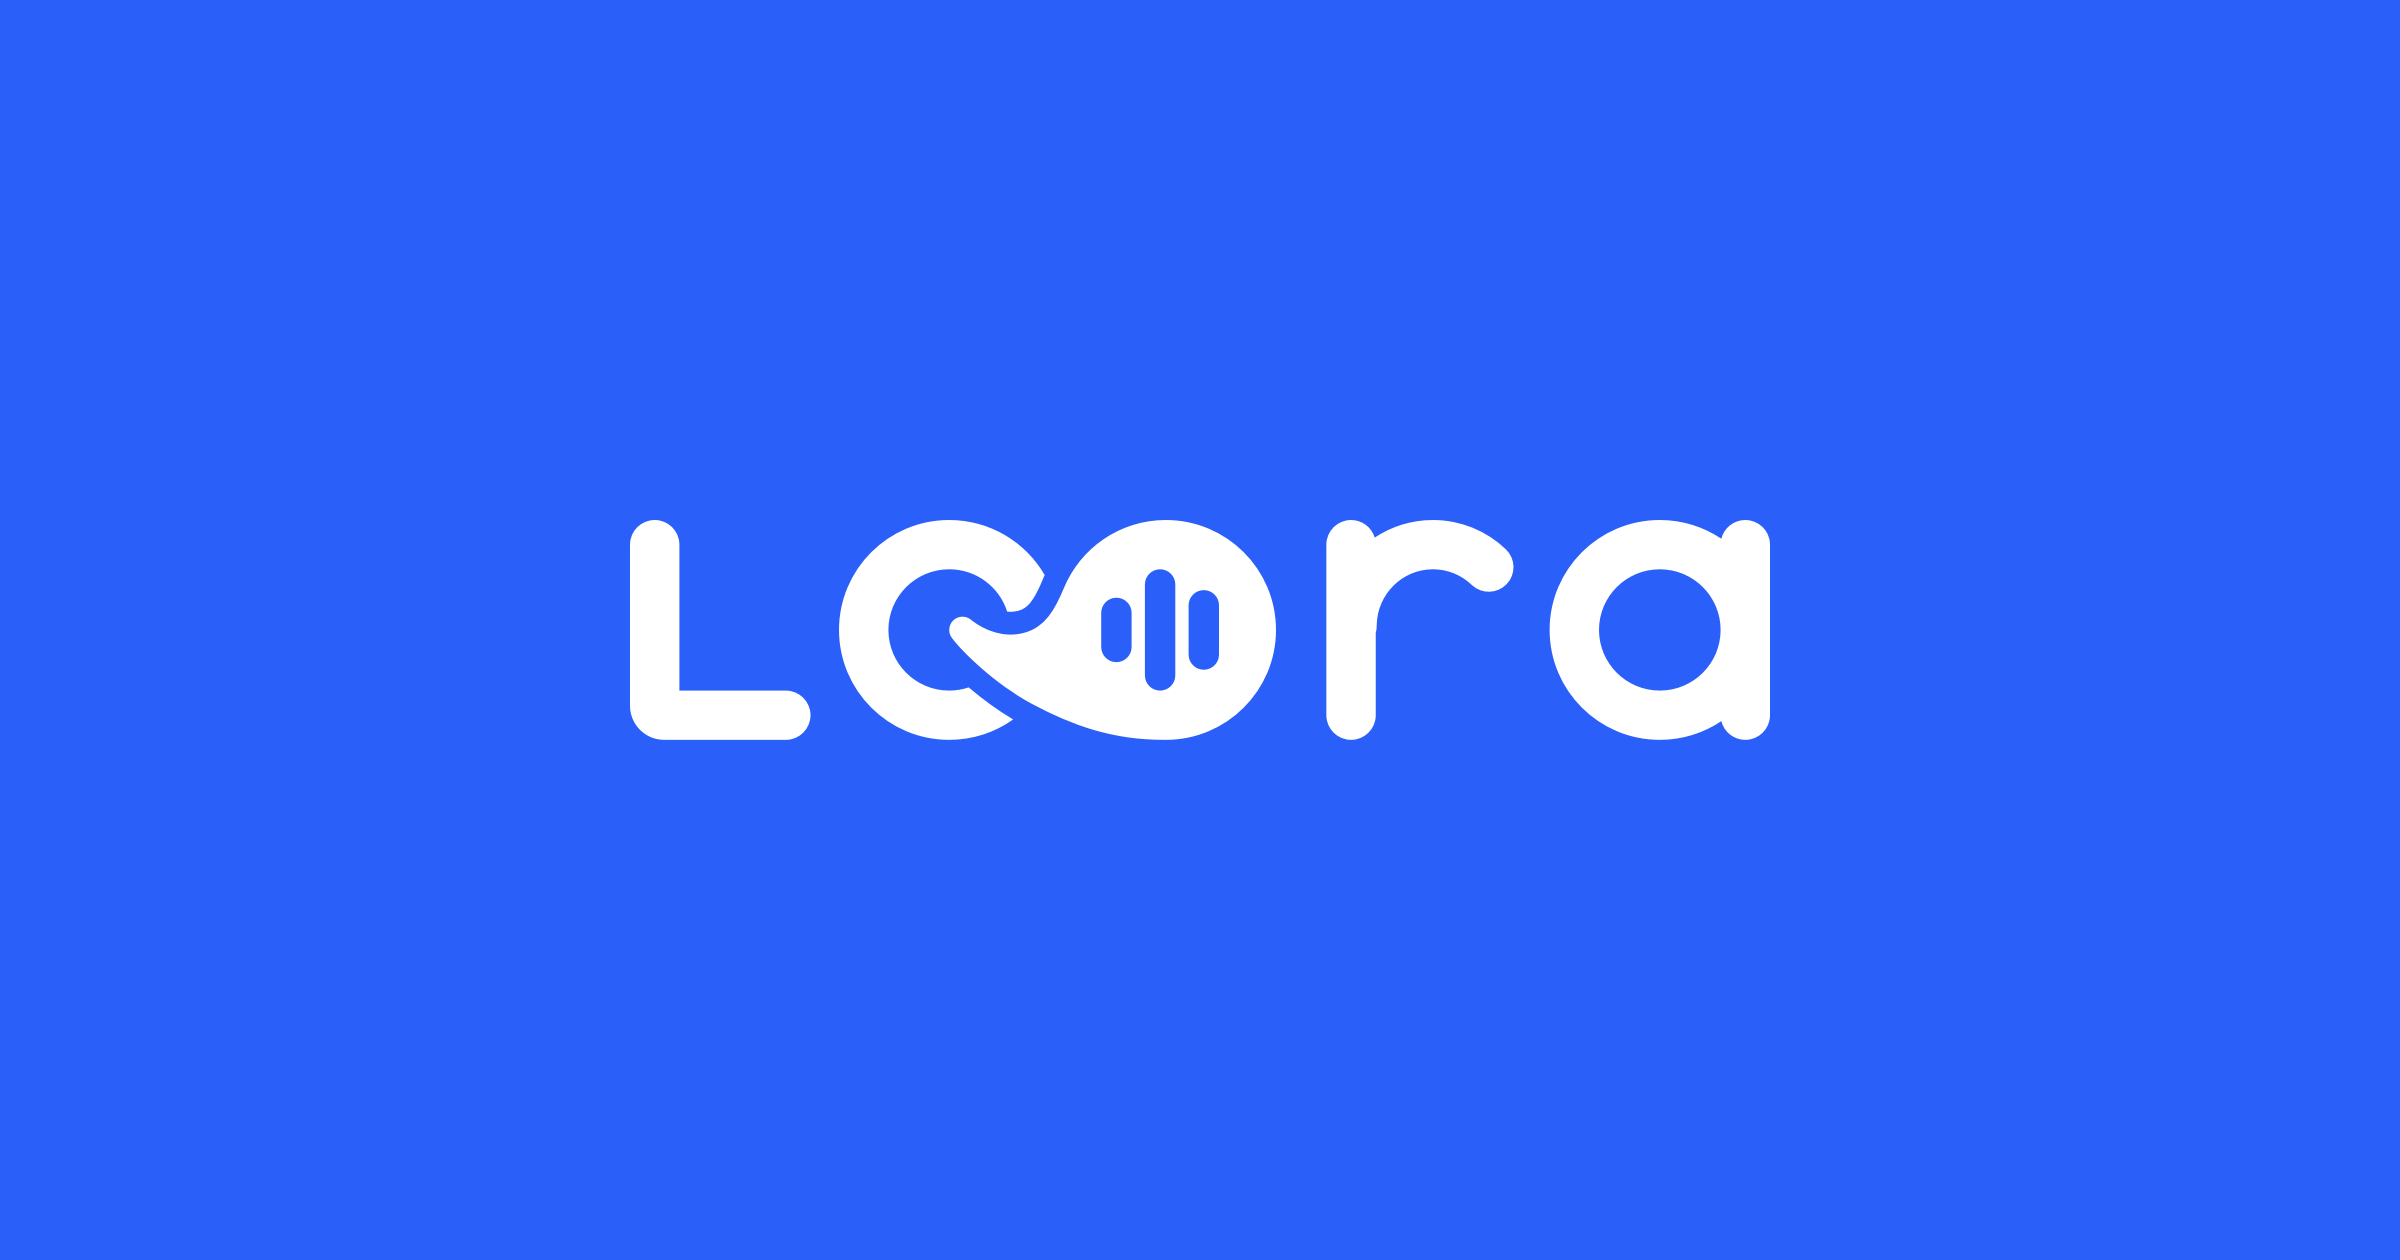 已有数千付费用户，生成式AI驱动的英语学习应用Loora获1200万美元A轮融资